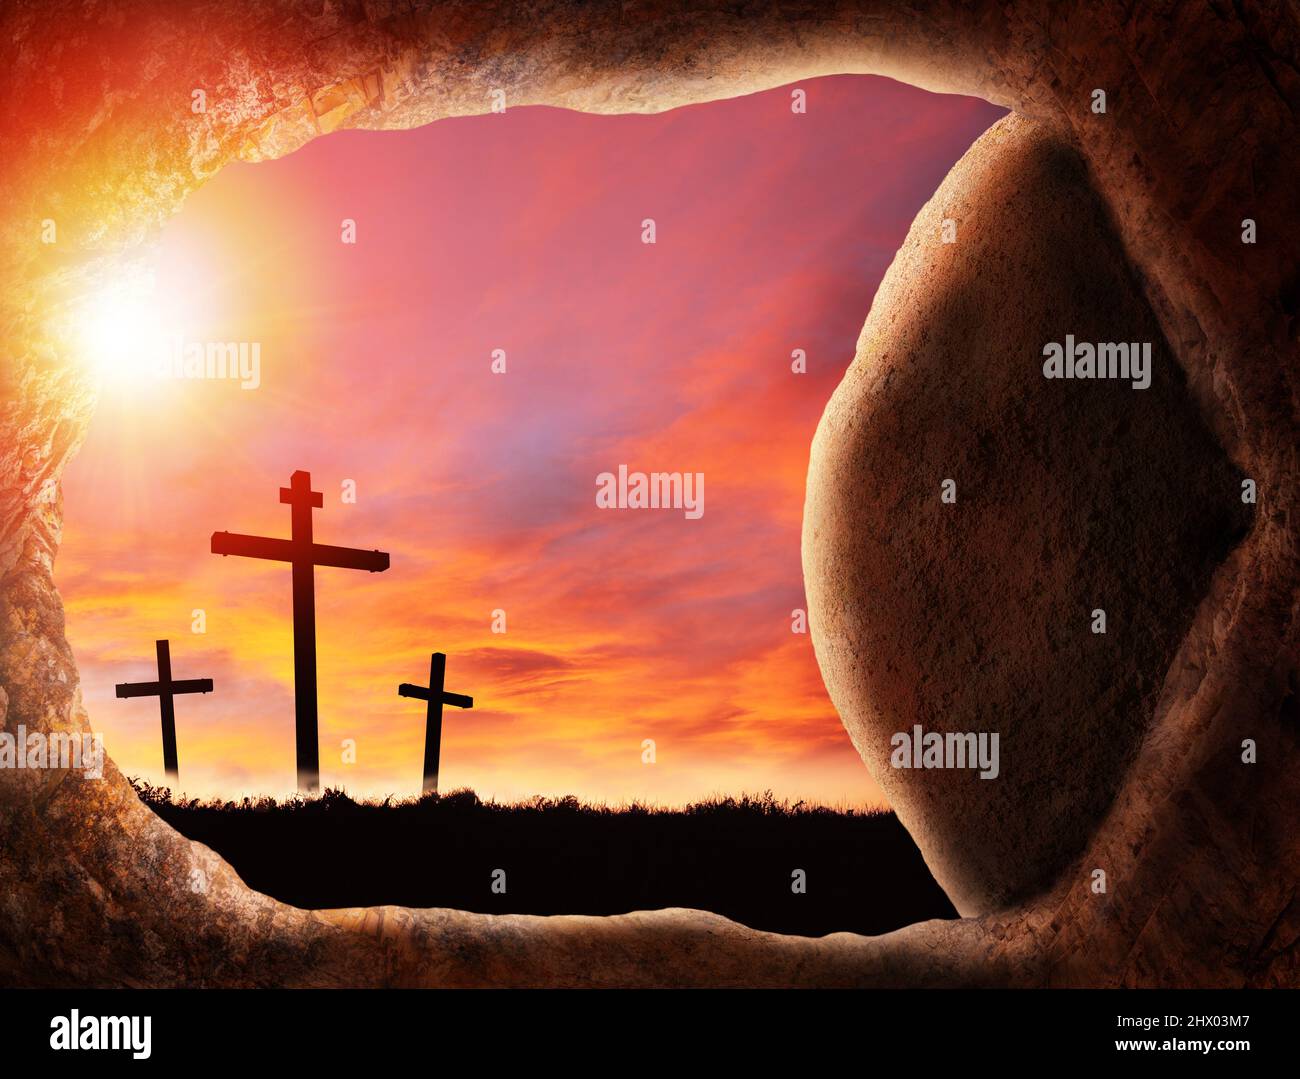 Vendredi Saint Pâques concept de Jésus résurrection de la tombe vide dans une grotte funéraire avec roc roulé ouvert montrant des croix crucifixion au lever du soleil. Banque D'Images